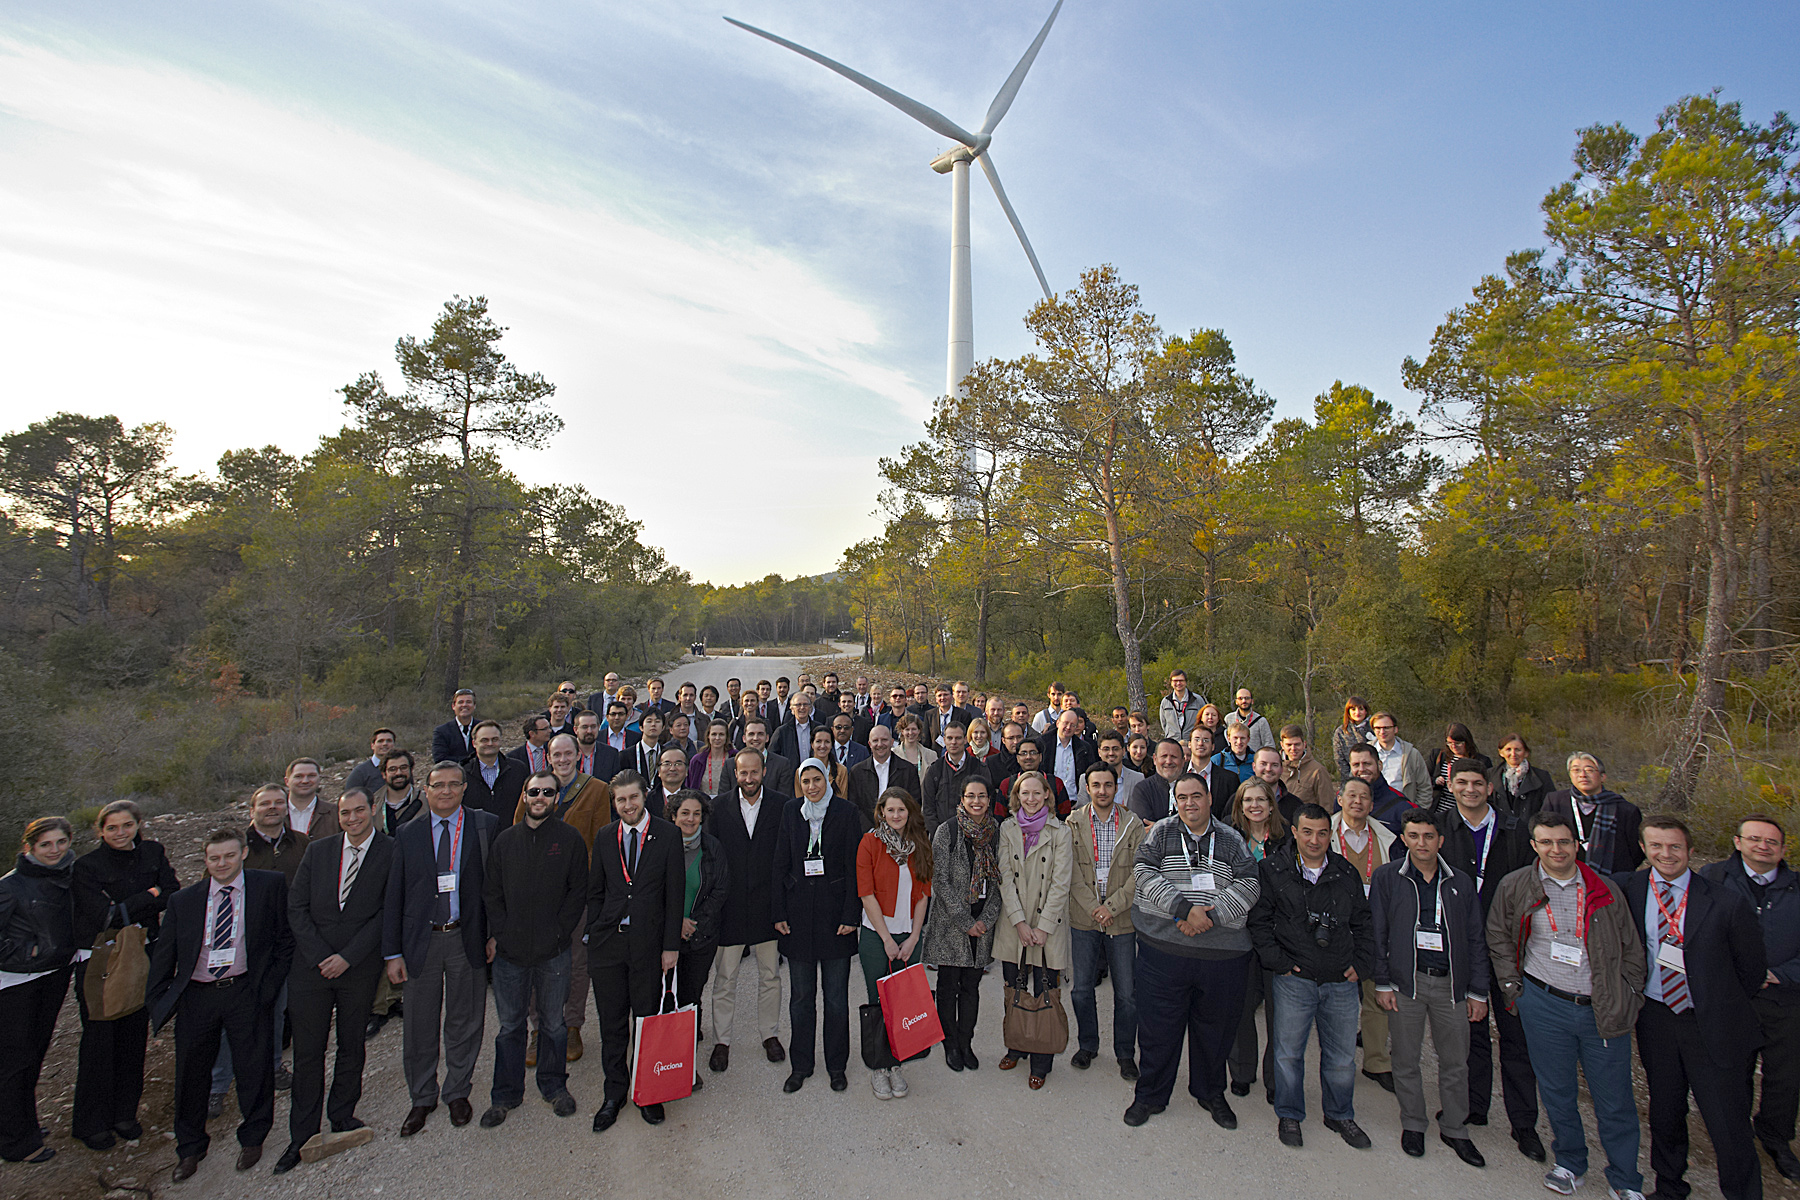 Energías renovables y eólica: Expertos de todo el mundo visitan parque eólico de Acciona